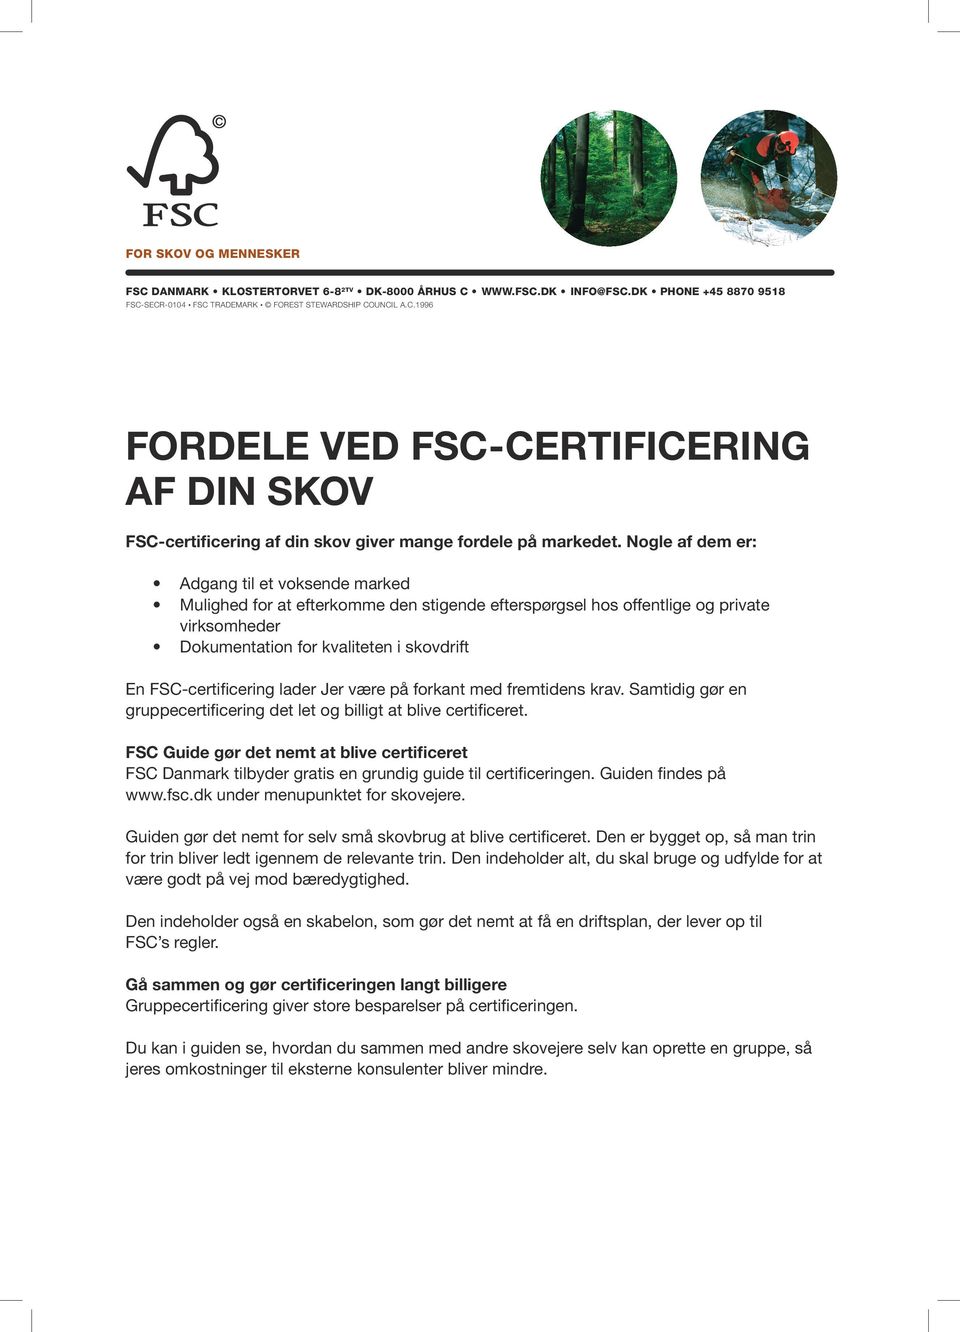 FSC-certificering lader Jer være på forkant med fremtidens krav. Samtidig gør en gruppecertificering det let og billigt at blive certificeret.